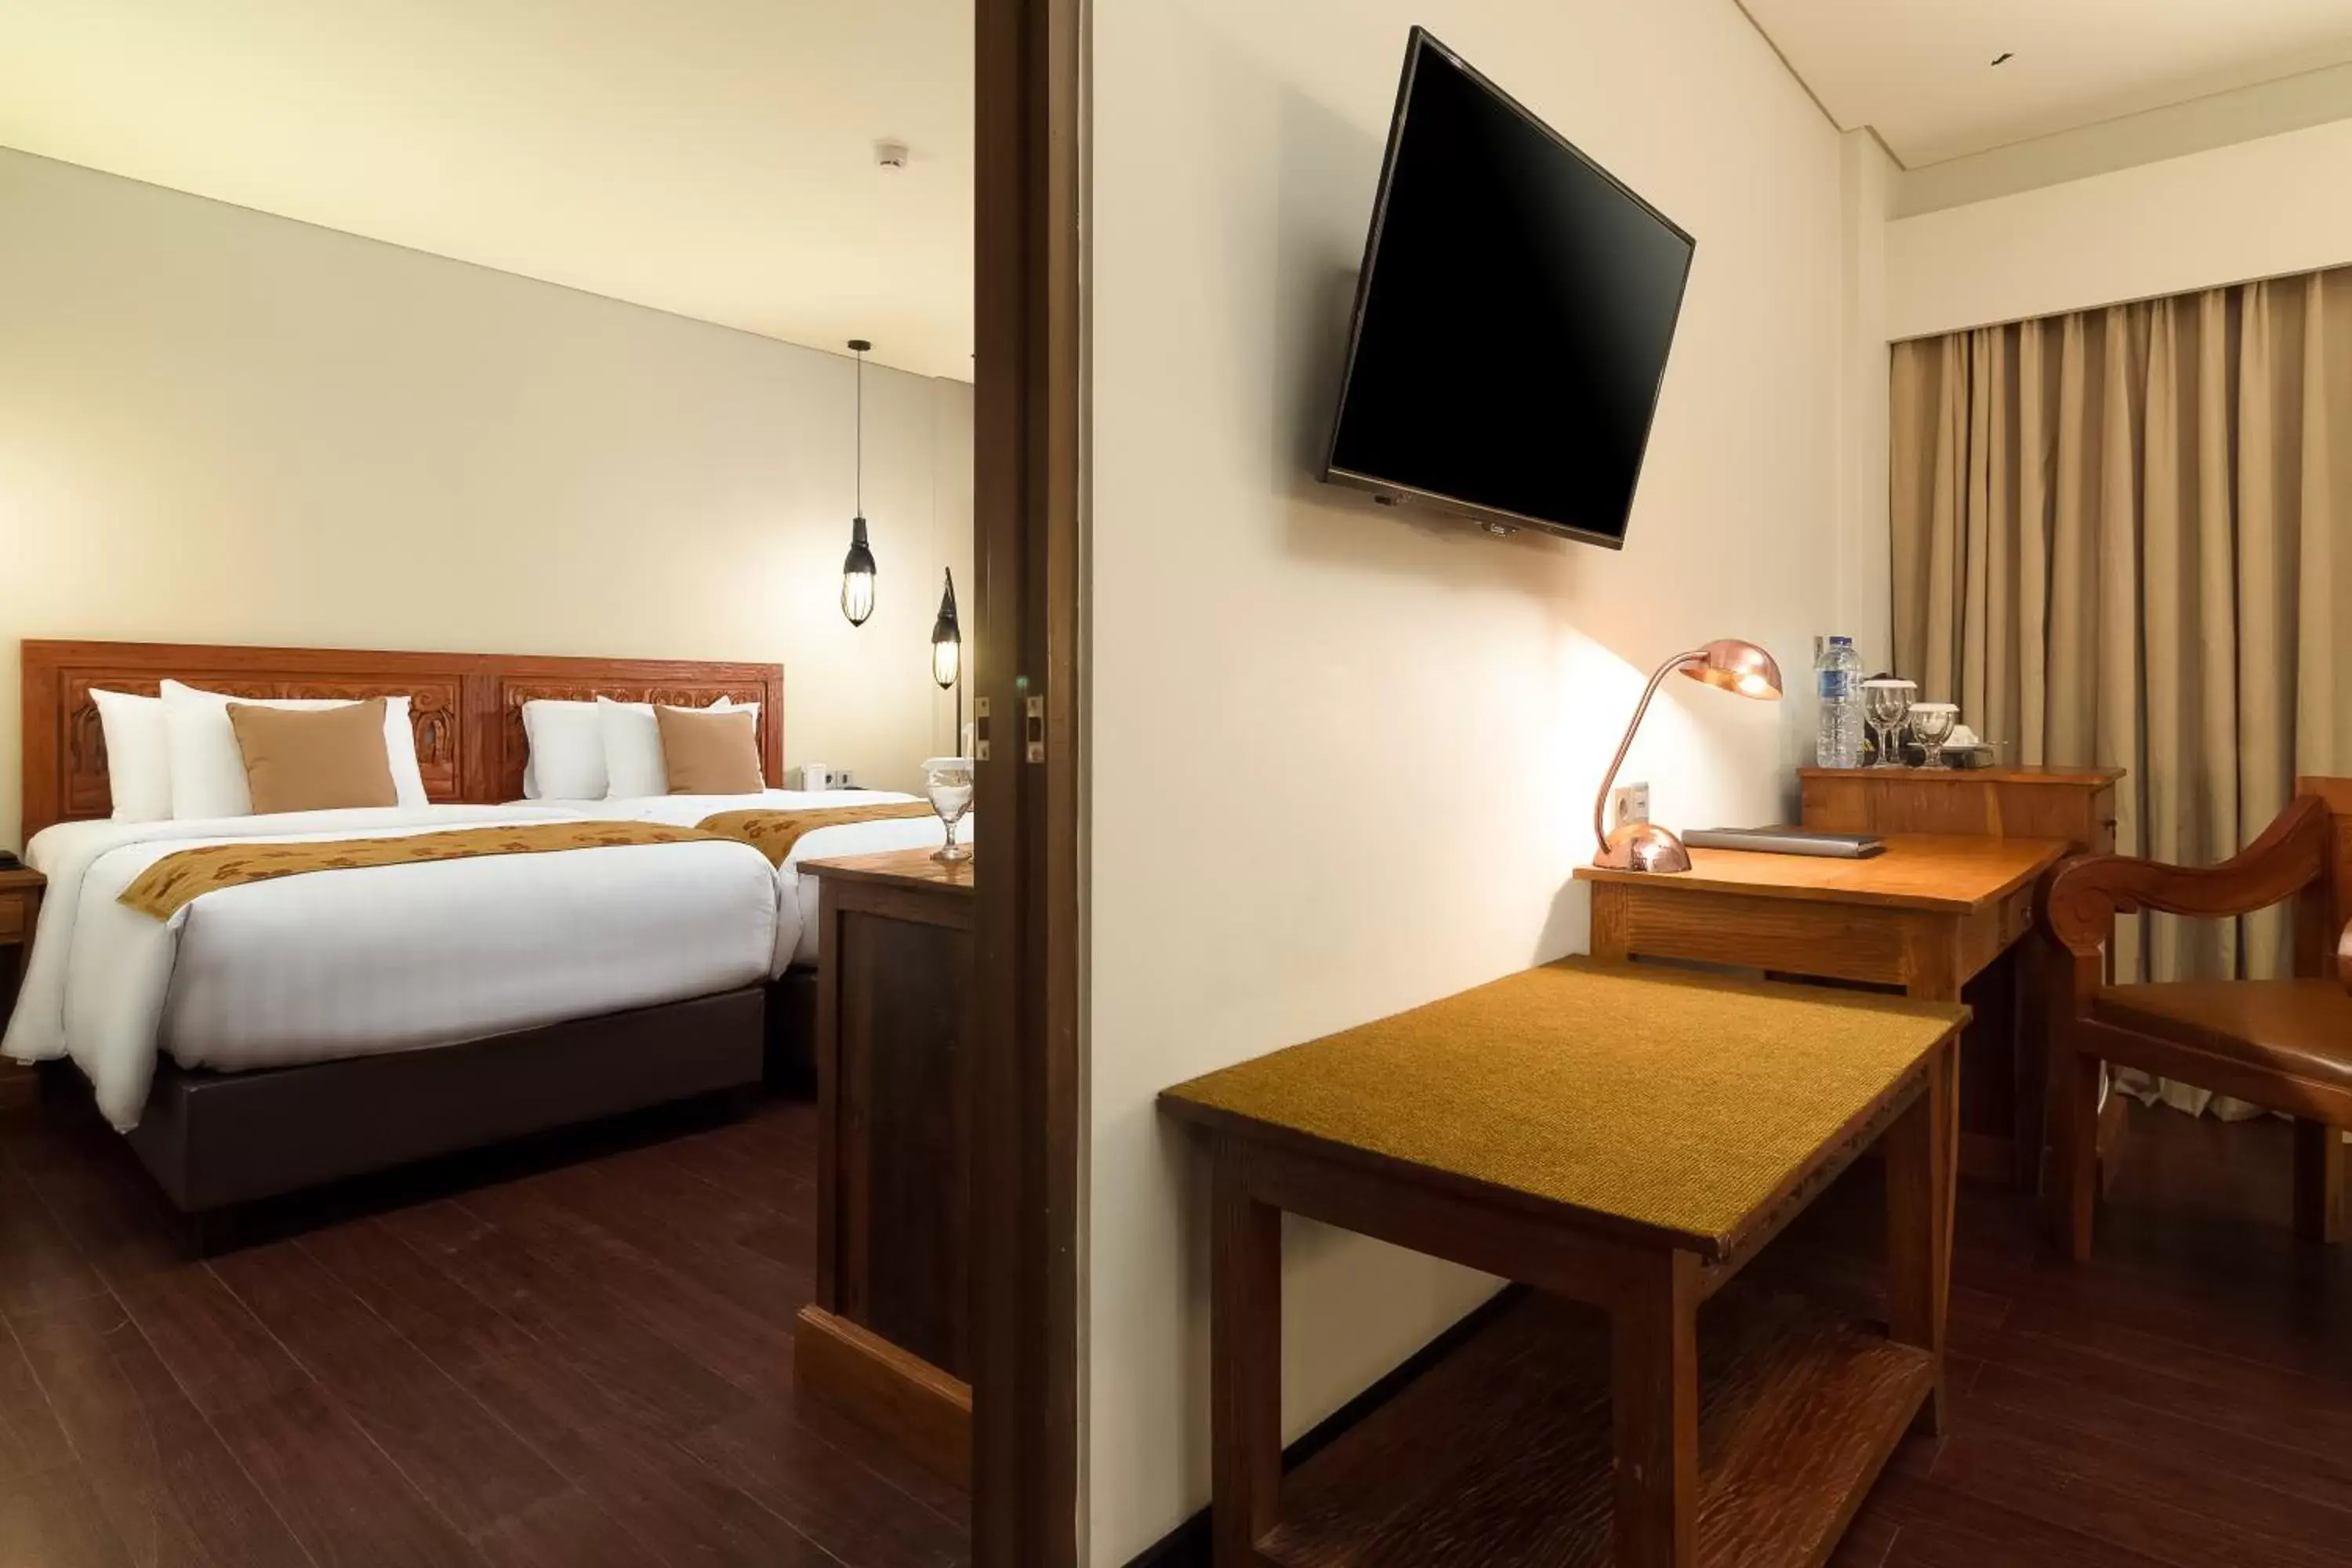 Decorative detail, Bed in Best Western Premier Agung Resort Ubud